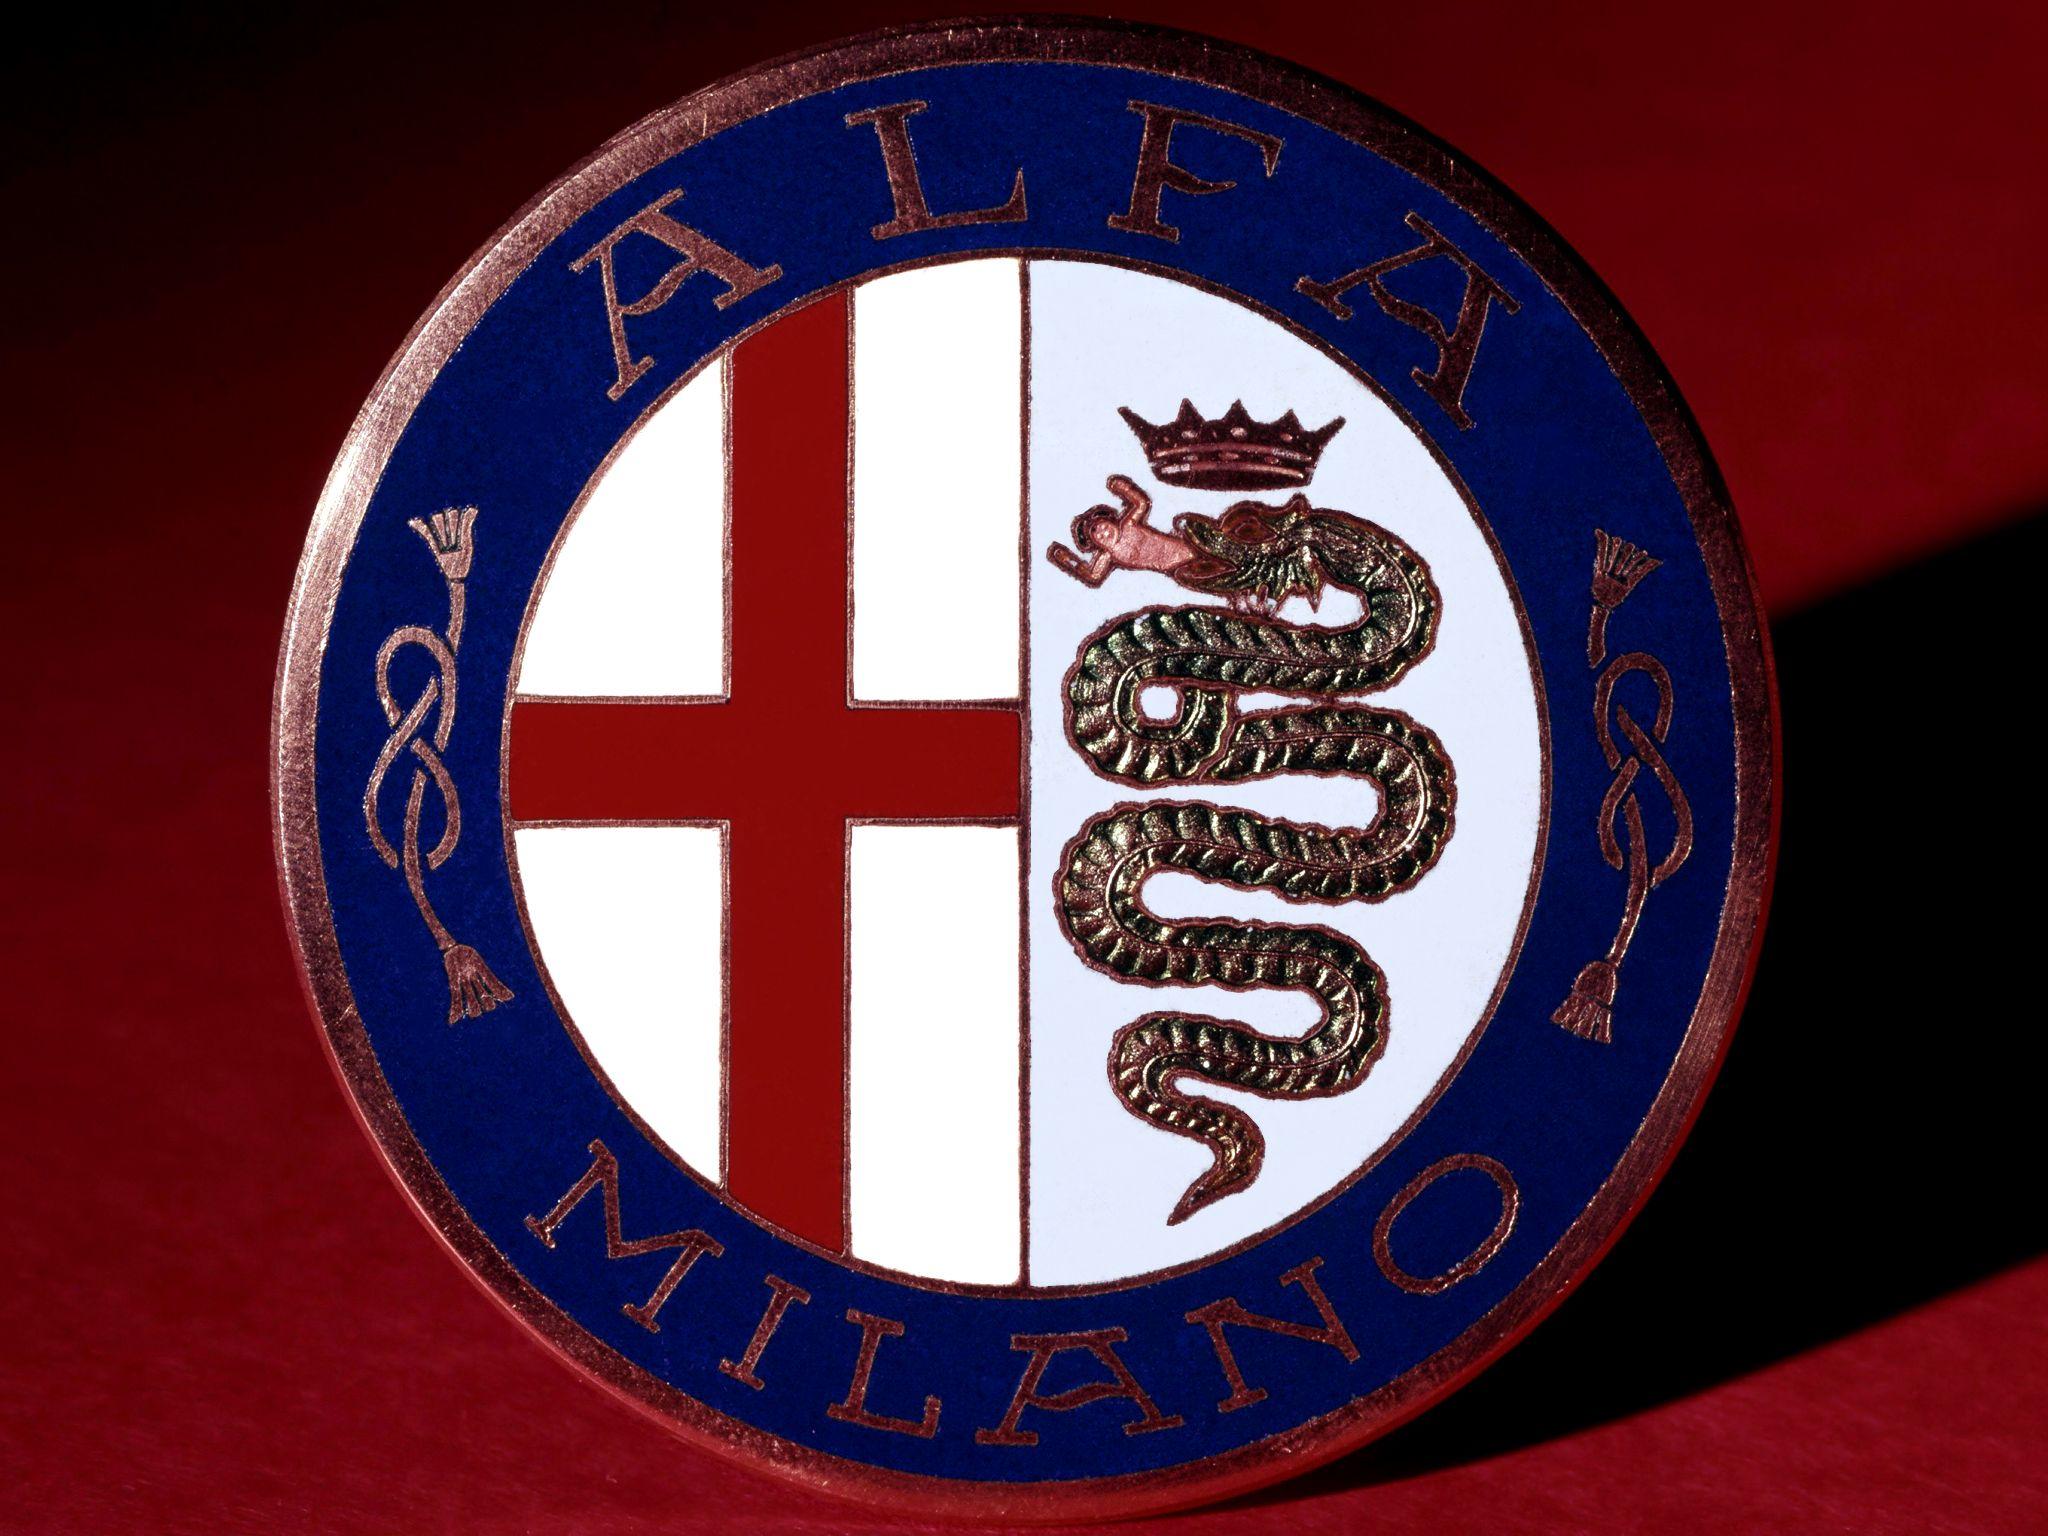 Alfa Romeo Car Logo - Alfa Romeo Logo, Alfa Romeo Car Symbol Meaning | Car Brand Names.com